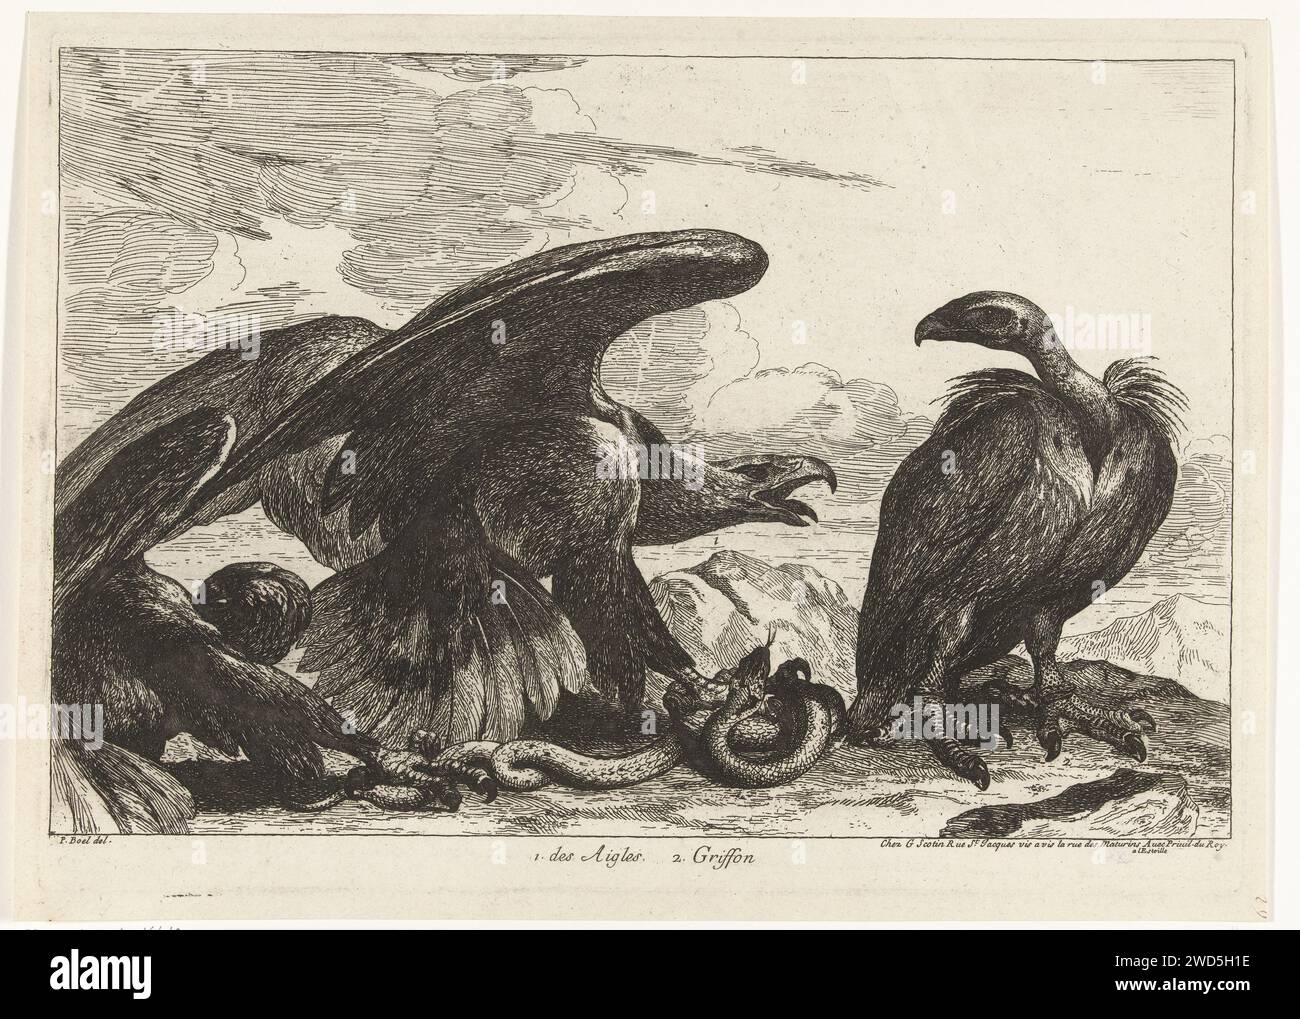 Gier et un aigle avec tuyau, Peeter Boel (attribué à), d'après Peeter Boel, 1670 - 1674 estampe dans un paysage rocheux, un aigle et un vautour d'un serpent se battent. Gravure sur papier de Paris oiseaux prédateurs : aigle. oiseaux prédateurs : vautour Banque D'Images